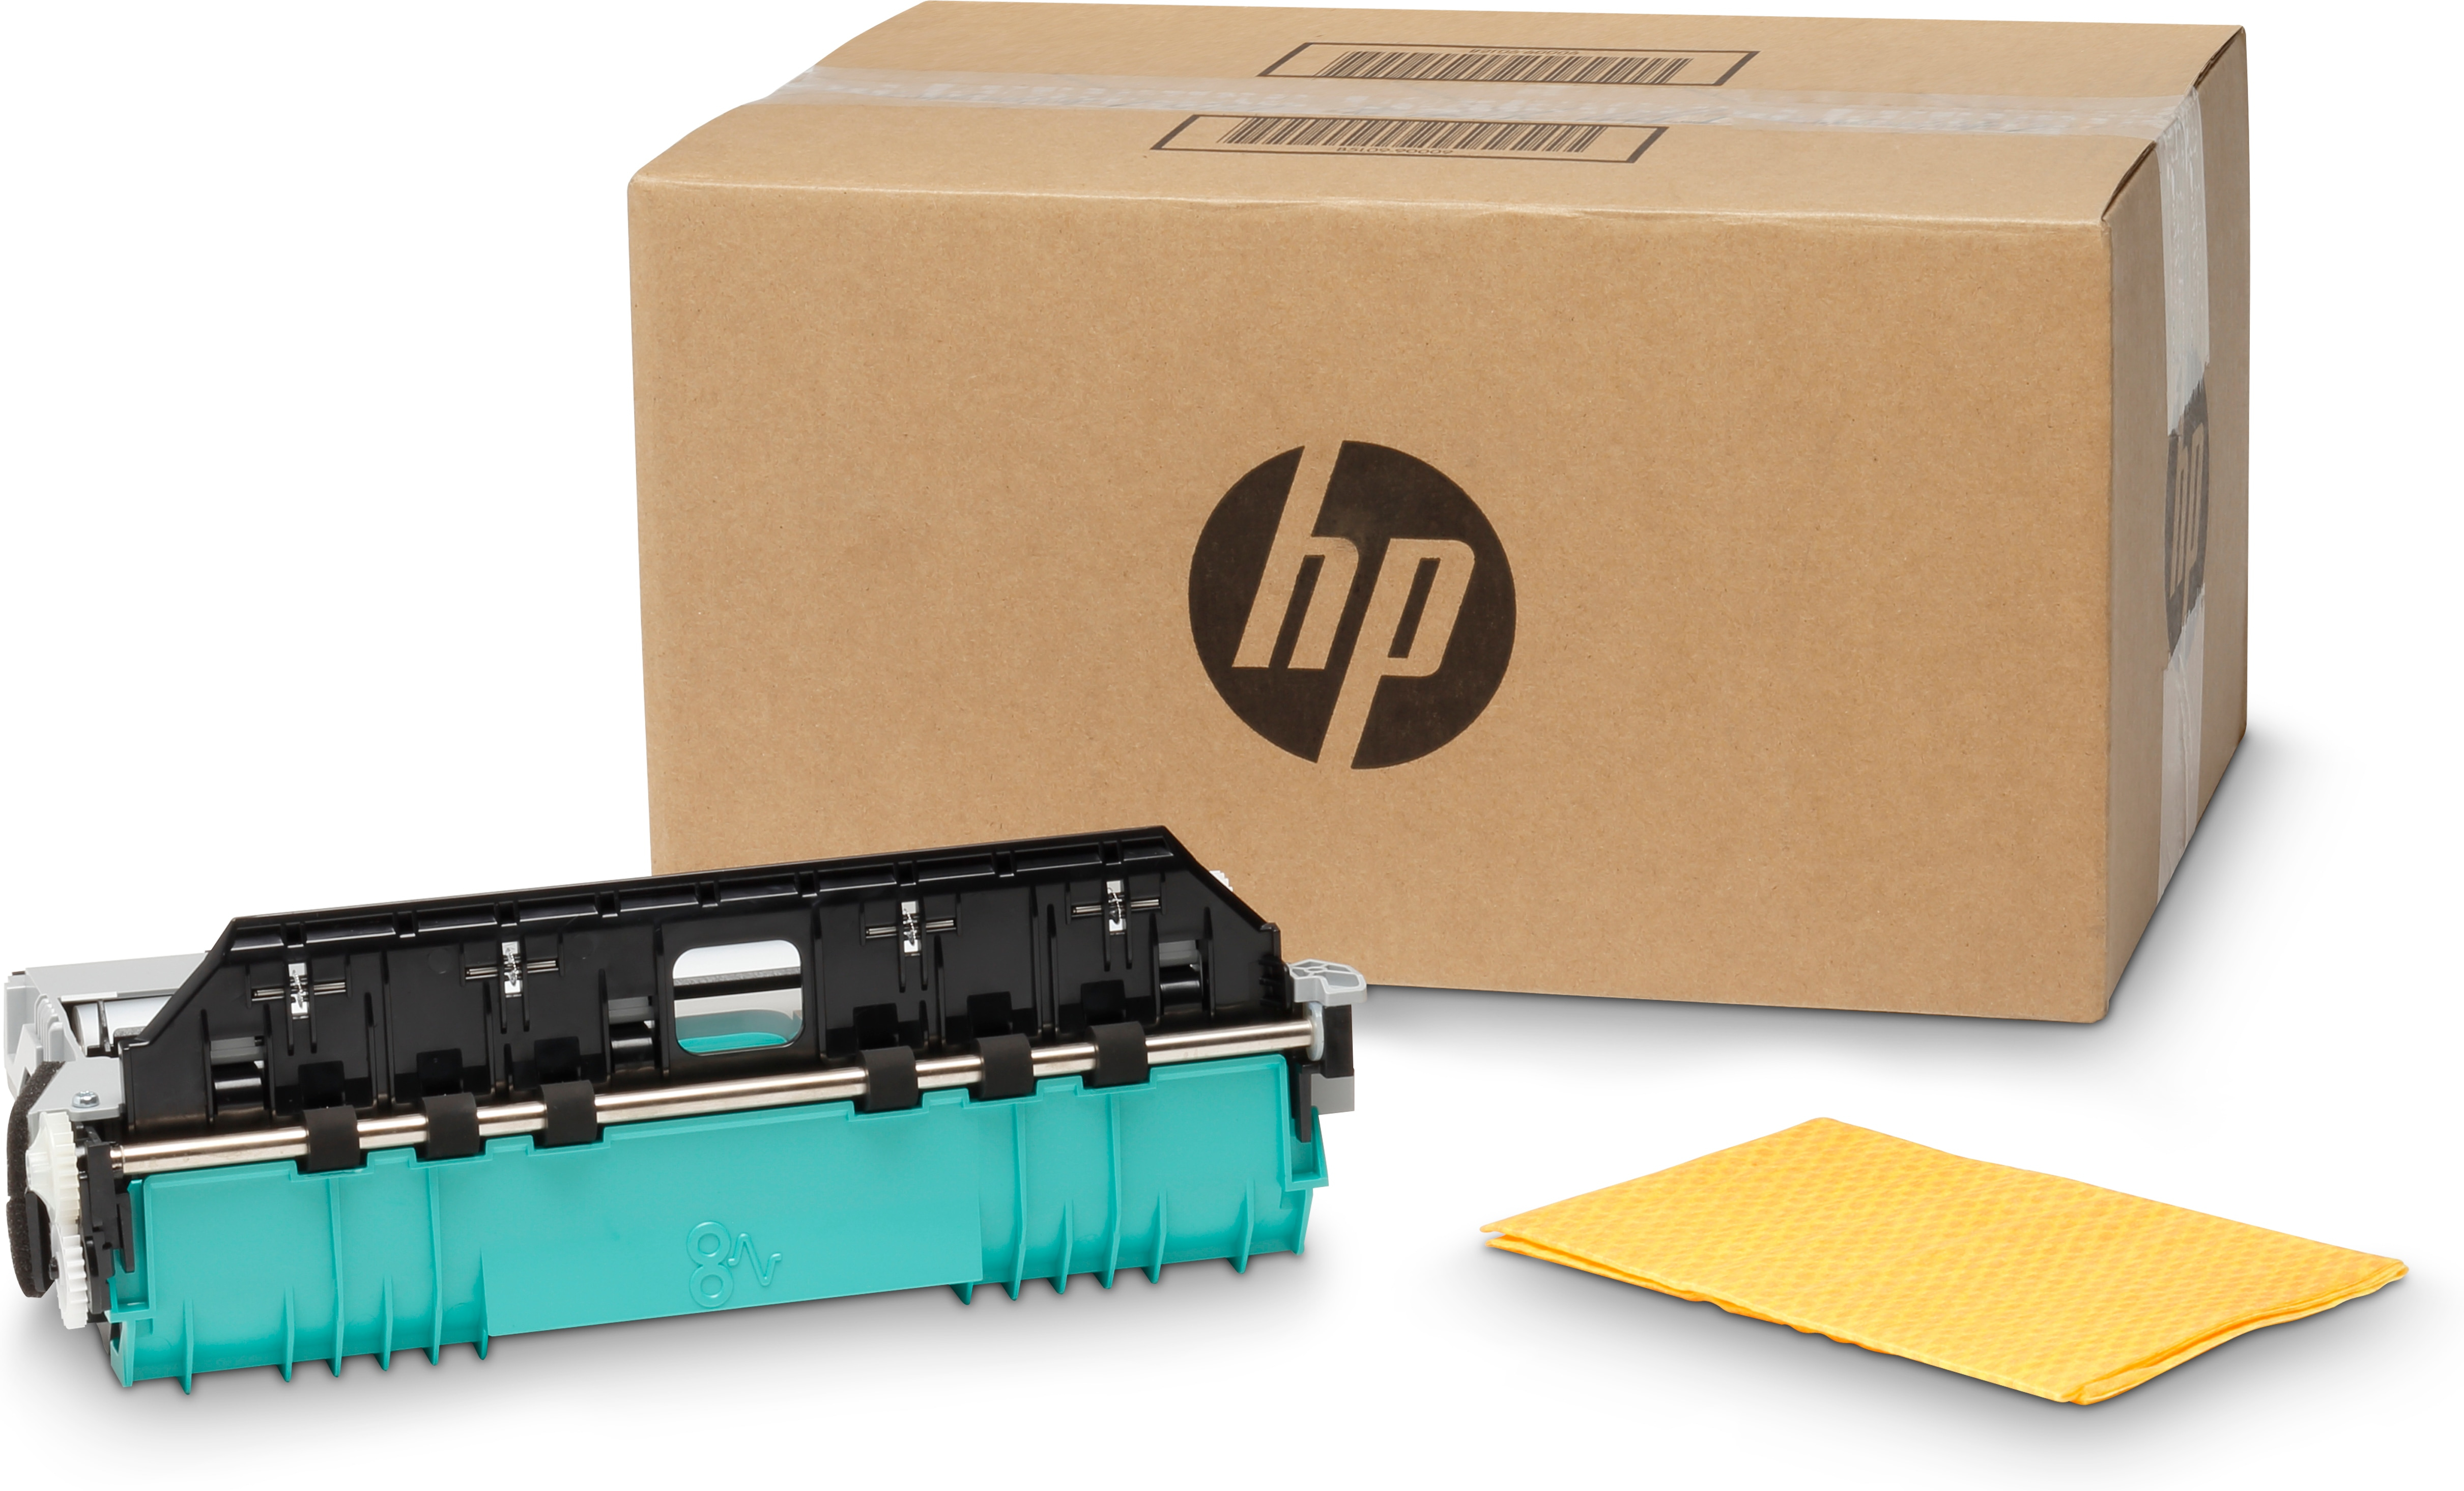 HP OfficeJet Enterprise-Tintensammeleinheit - Abfallbehälter - Schwarz - Grau - HP Officejet Enterprise Color X585 - X555 - Business - Unternehmen - 280 mm - 158 mm